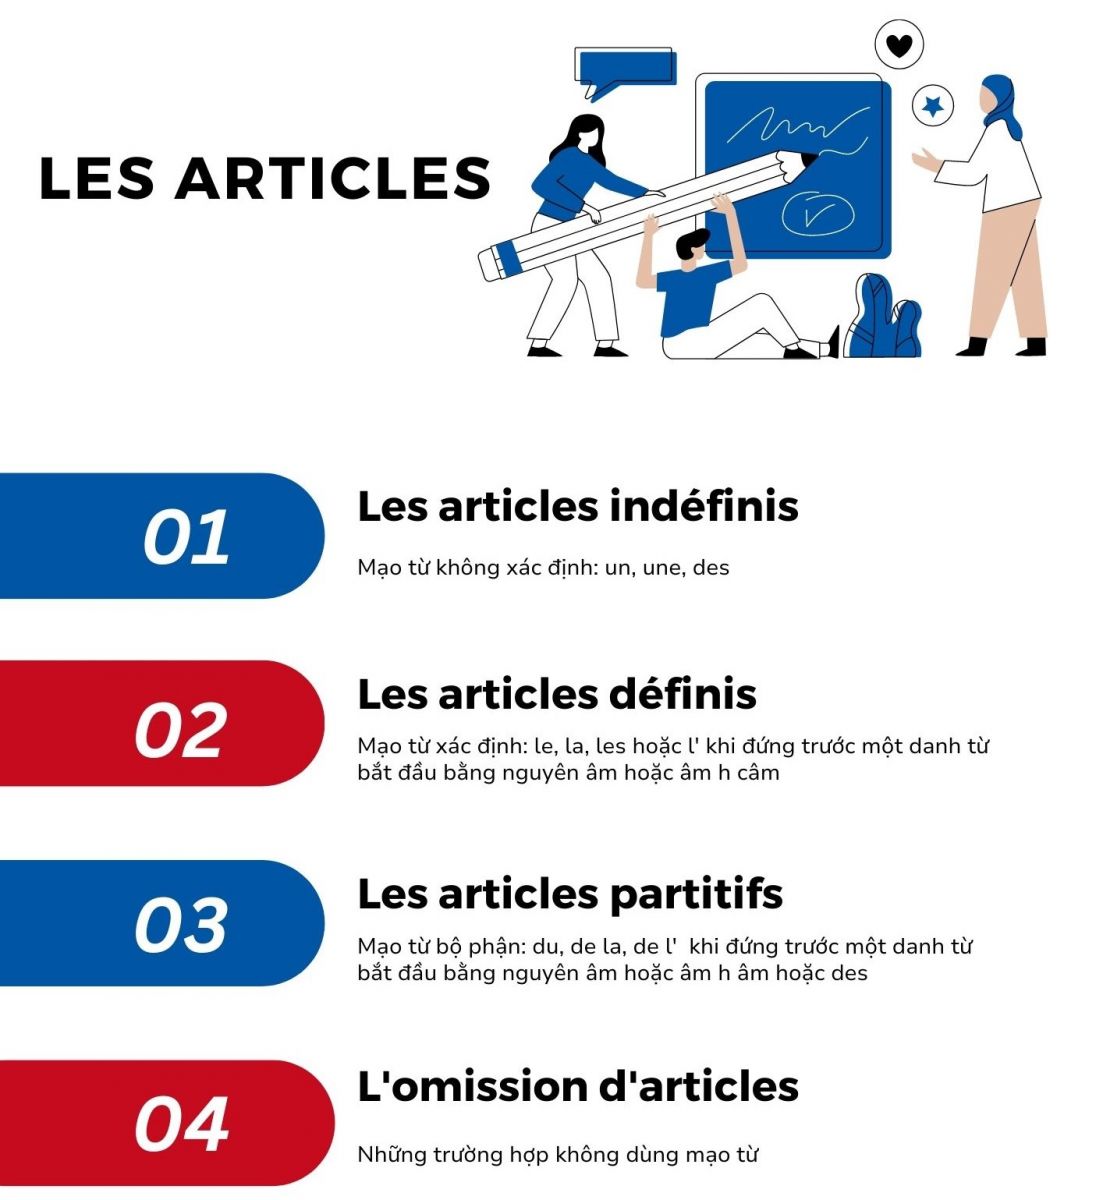 Các nội dung quan trọng về mạo từ trong tiếng Pháp